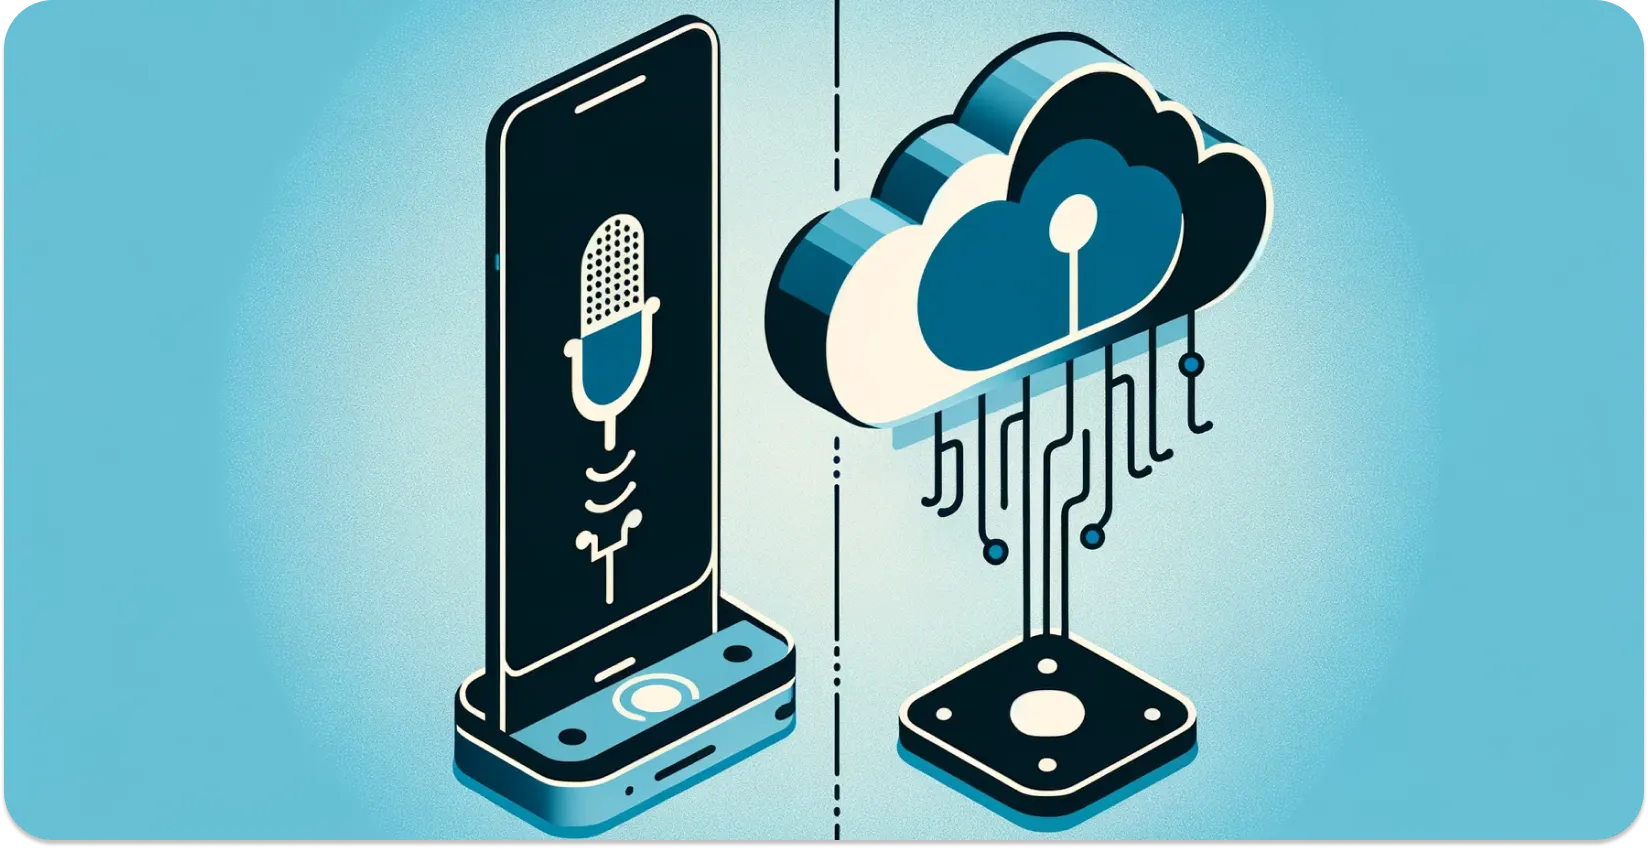 Встроенный и облачный тип распознавания речи при повседневном использовании технологий.